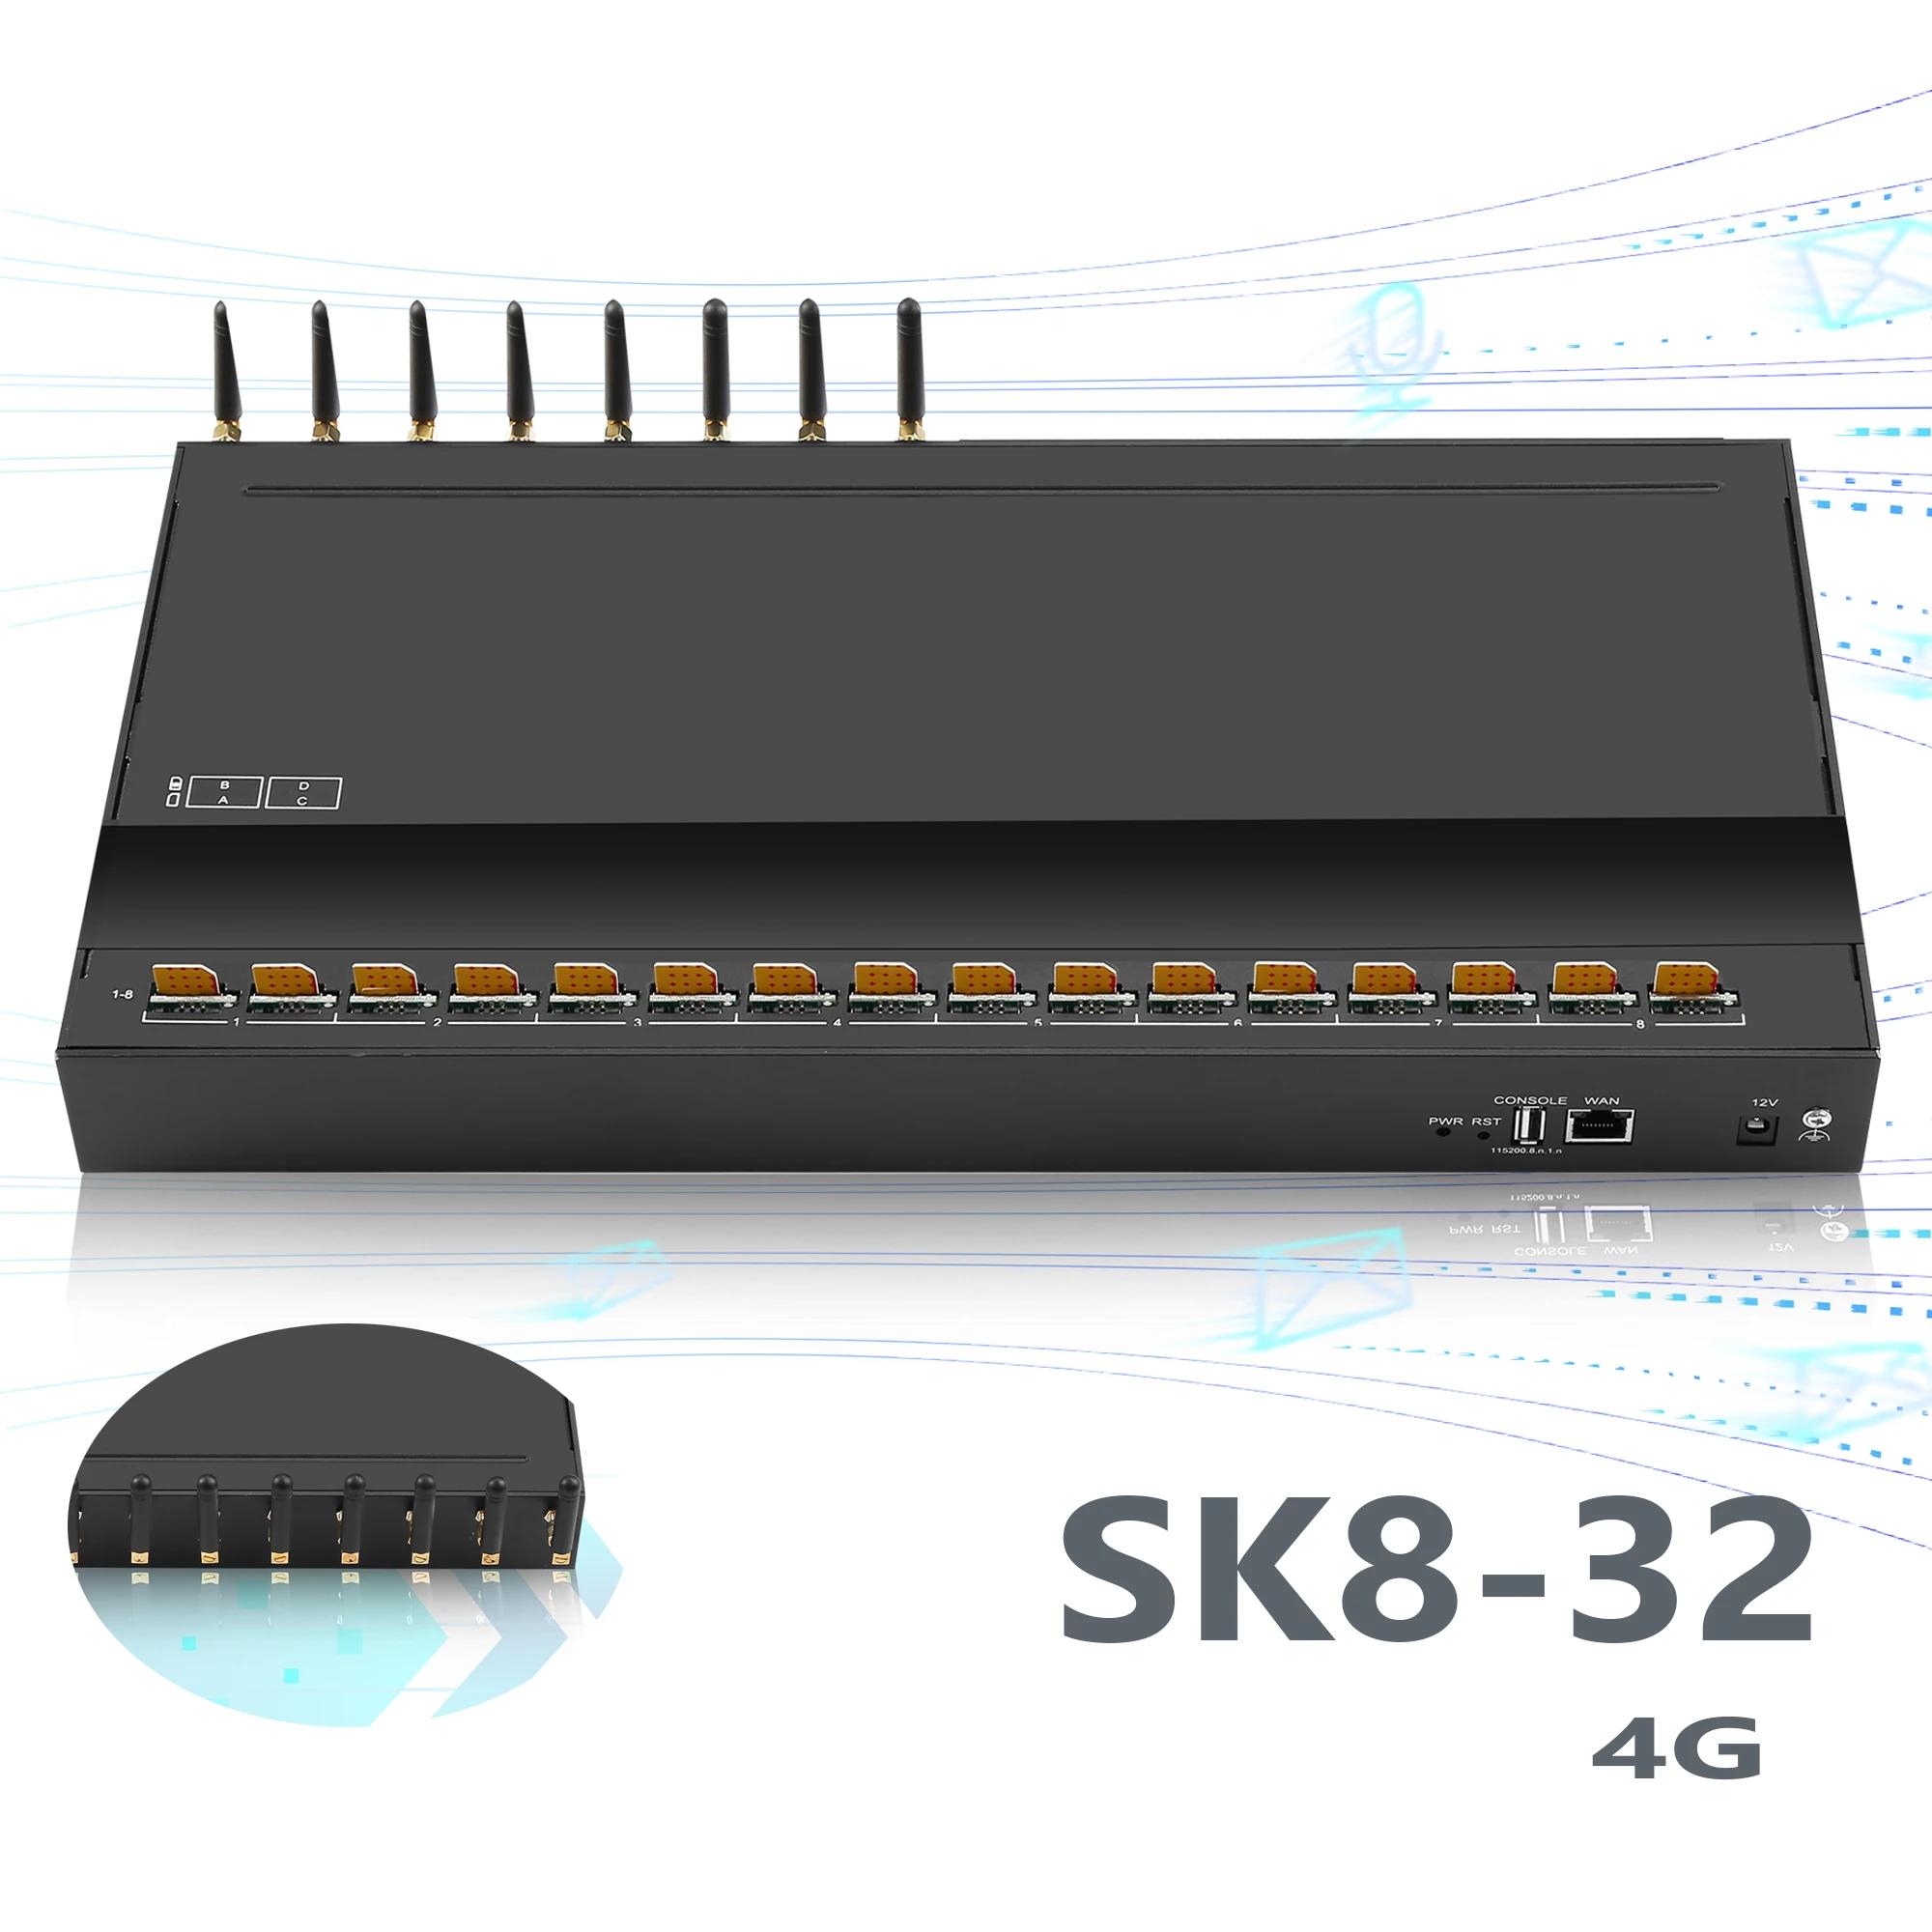 SK8-32 SMS Ʈ SMS , 4G 8  (EC25/EG91), 32   , IMEI  SMS , IMEI  , EIMS/SMPP